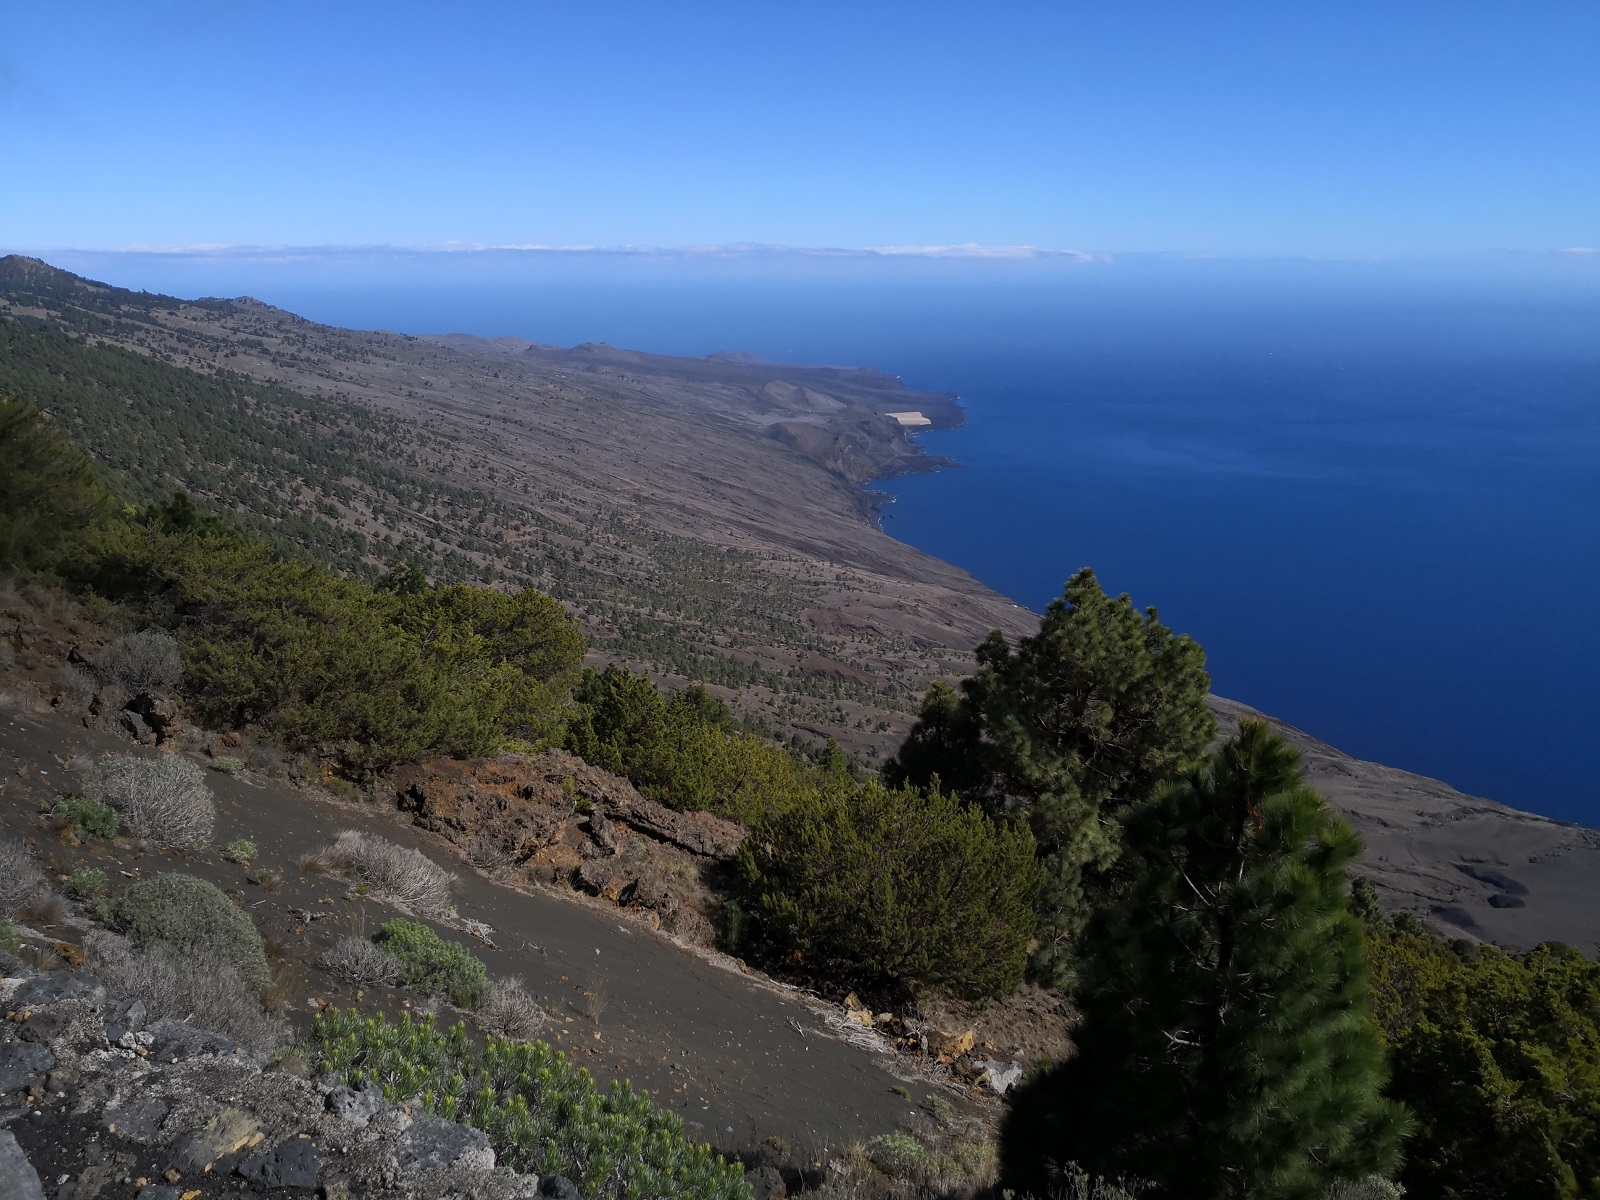 Mirador El Julan - az innen látható környező tájat viszonylag fiatal vulkanikus kőzet borítja, ami még a mai napig bizonyos fokig alakítja a sziget ezen részének arculatát.